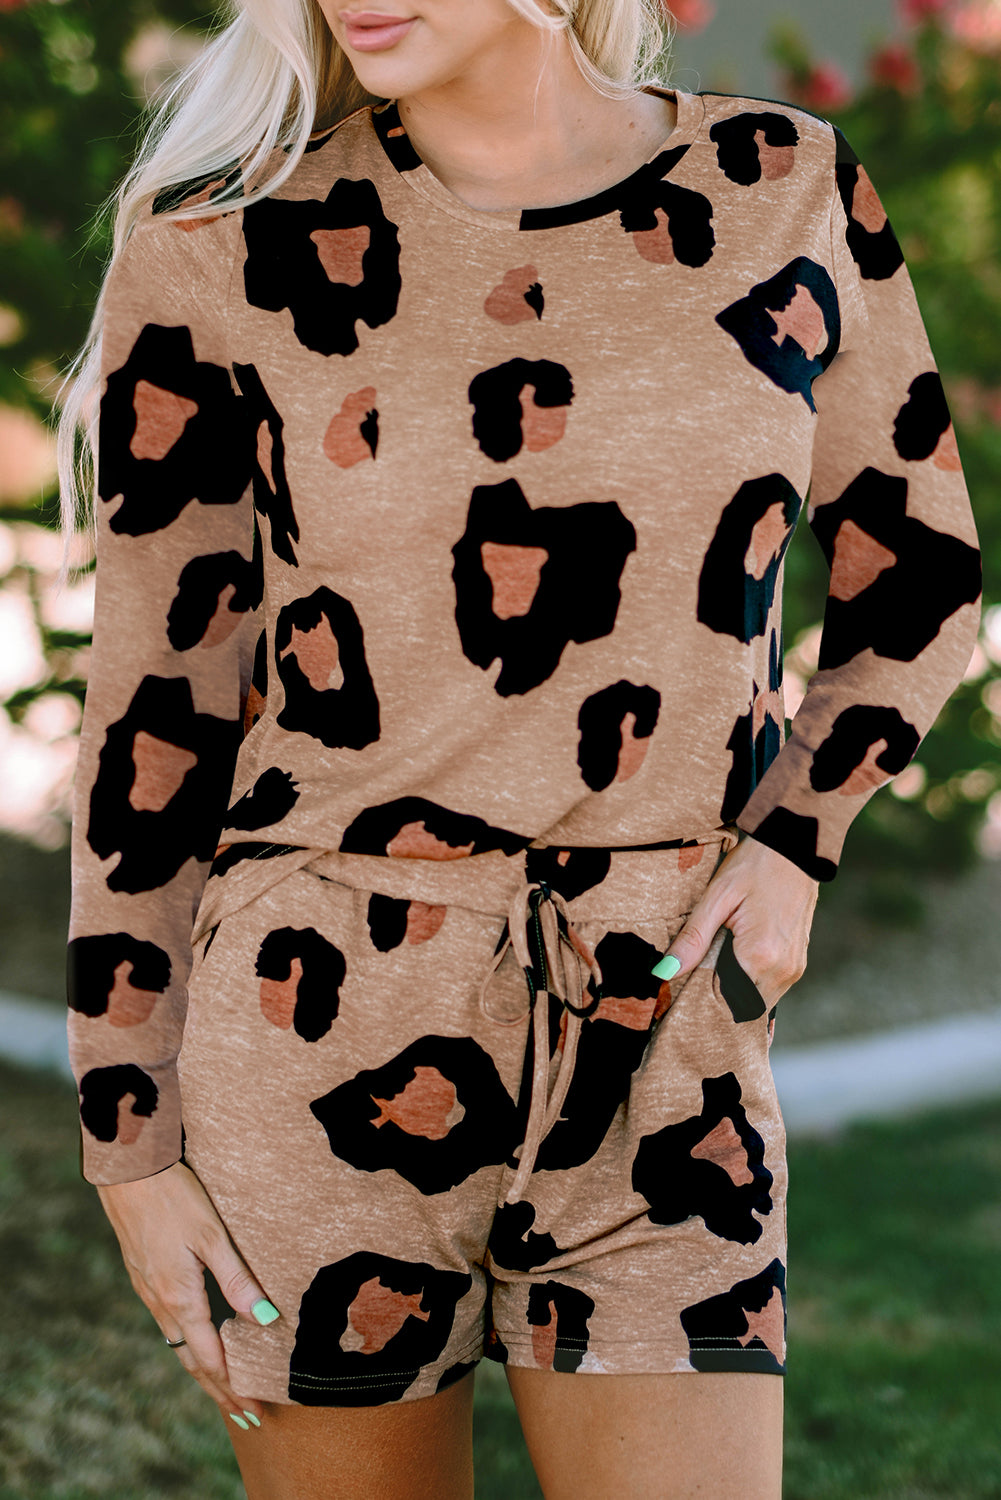 Pull à manches longues et short à imprimé animal léopard, tenue décontractée